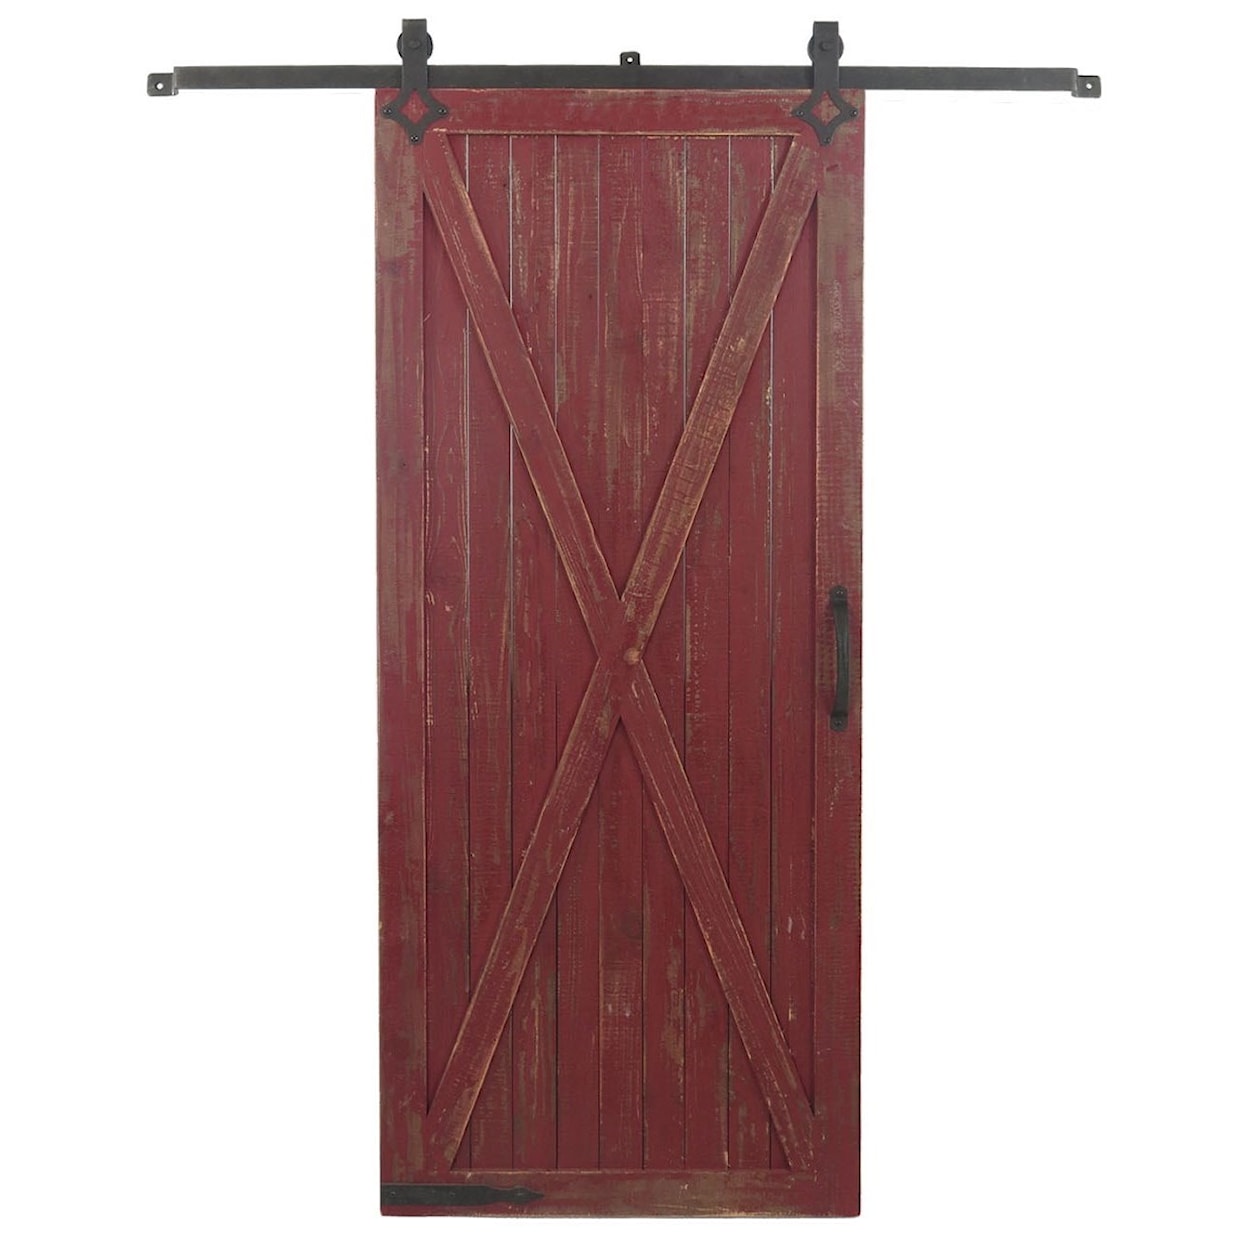 Crestview Collection Wall Décor Wooden Barn Door on Metal Slid